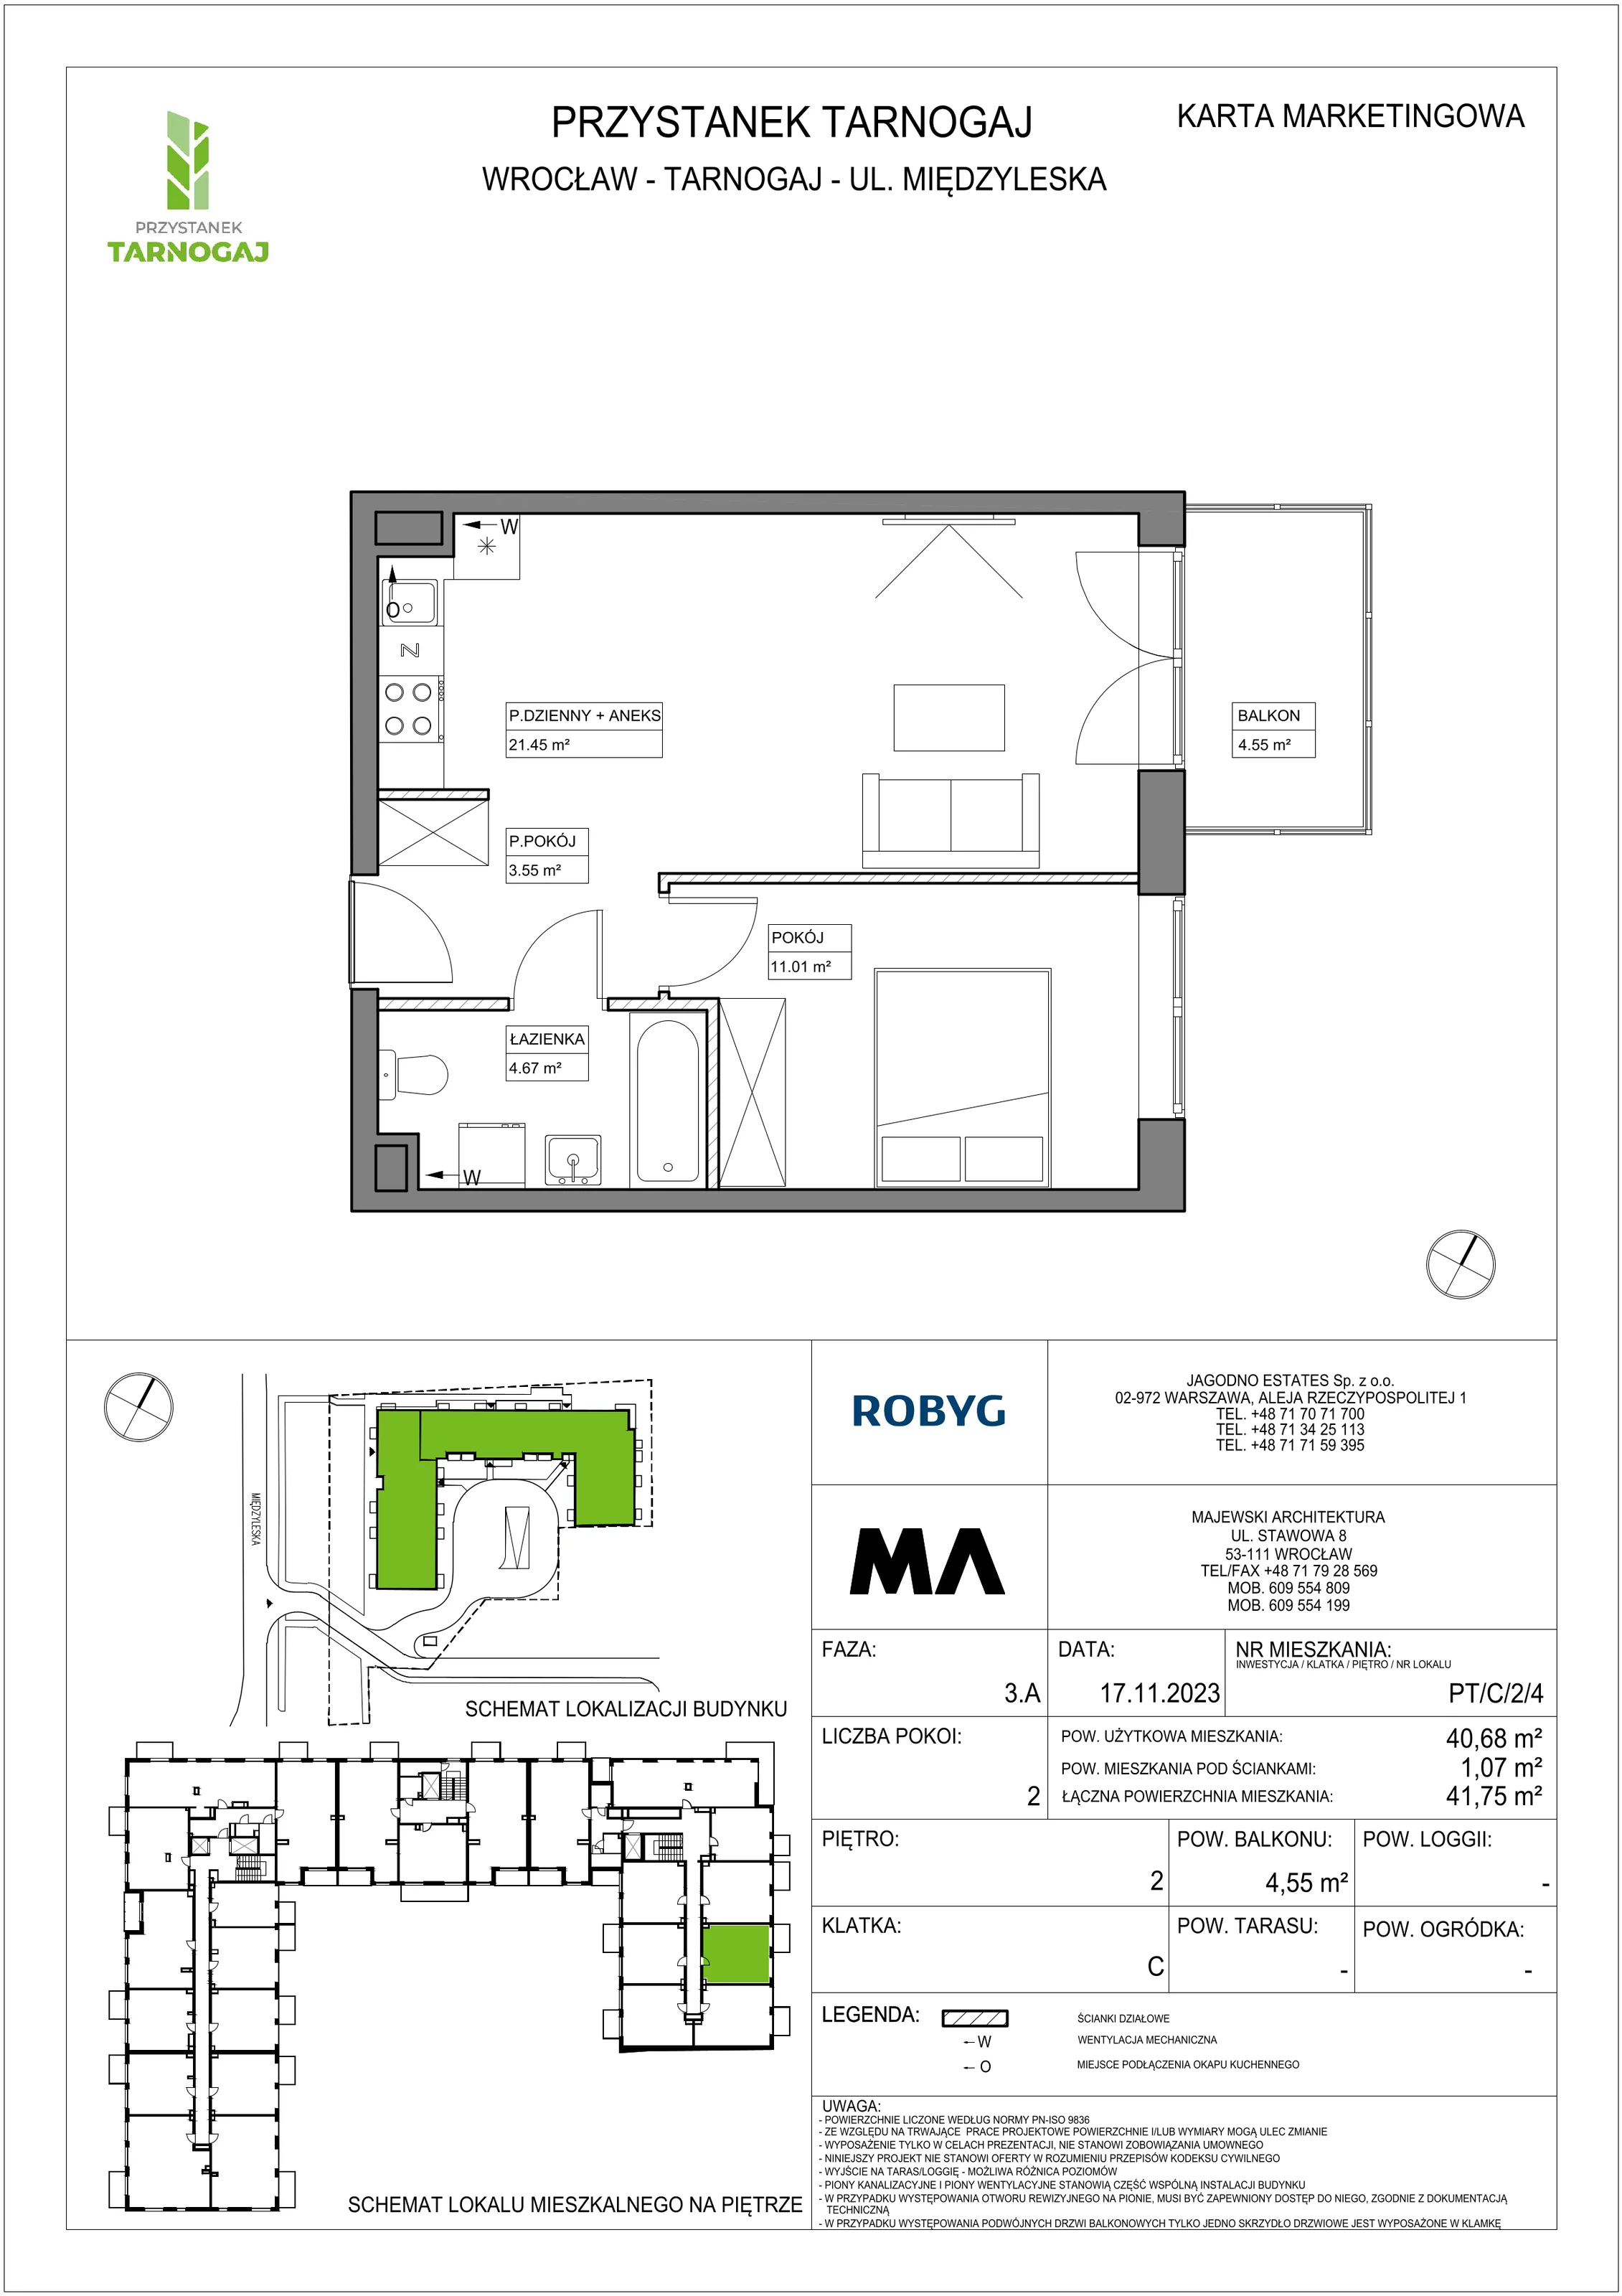 Mieszkanie 40,68 m², piętro 2, oferta nr PT/C/2/4, Przystanek Tarnogaj, Wrocław, Tarnogaj, Krzyki, ul. Międzyleska / Gazowa